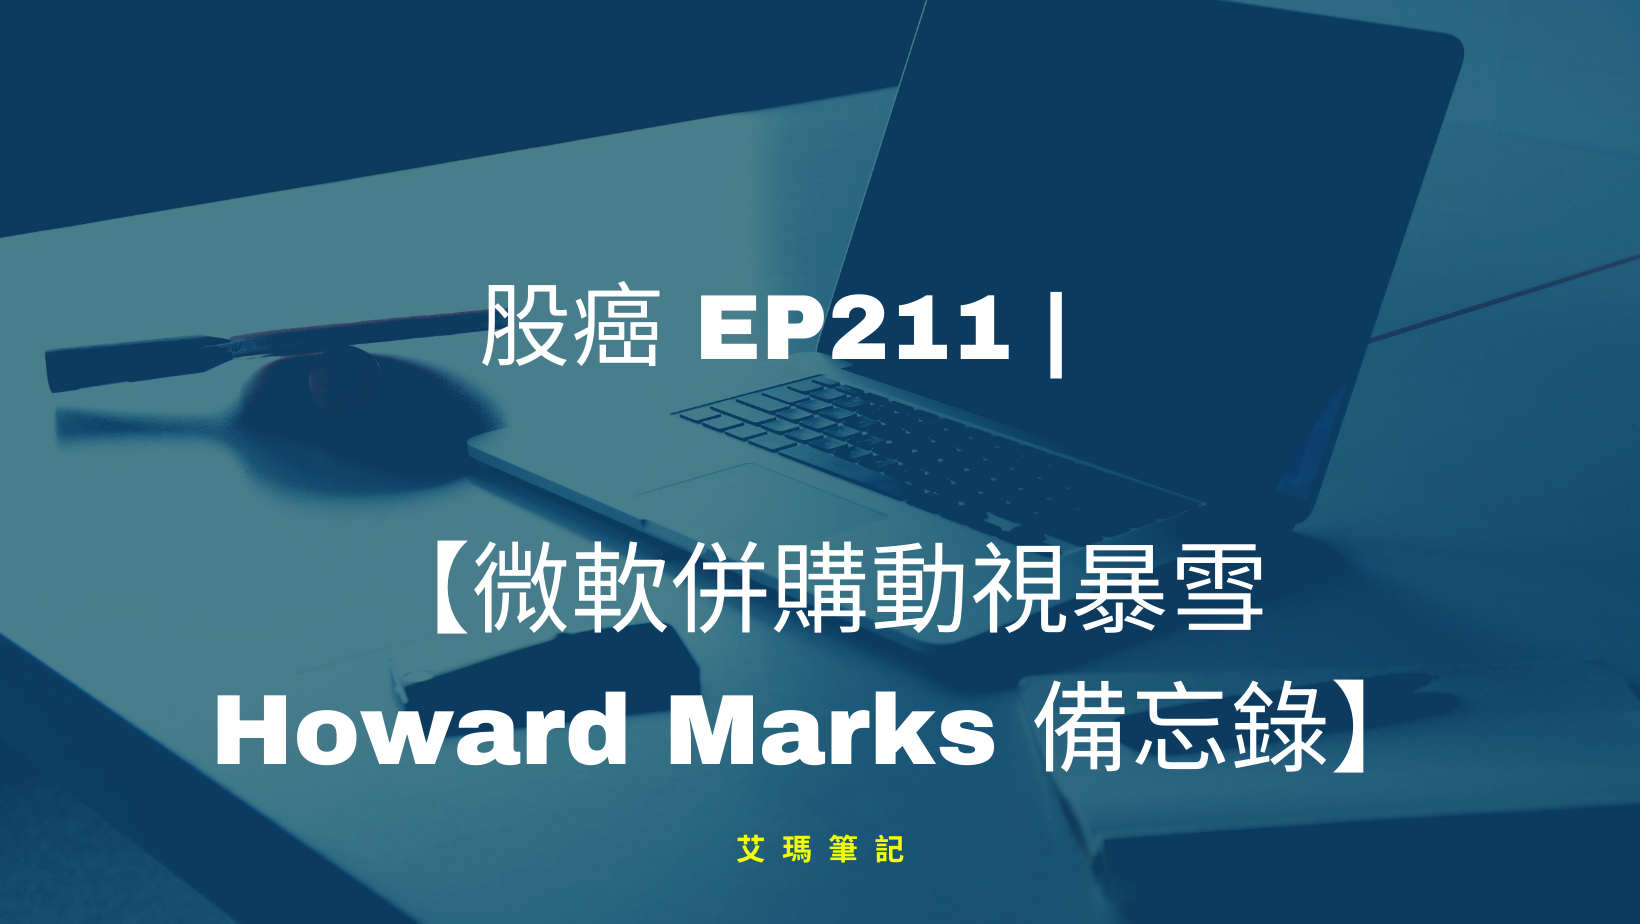 Thumbnail for 股癌 EP211 | 🤏🥚 【微軟併購動視暴雪&Howard Marks備忘錄】